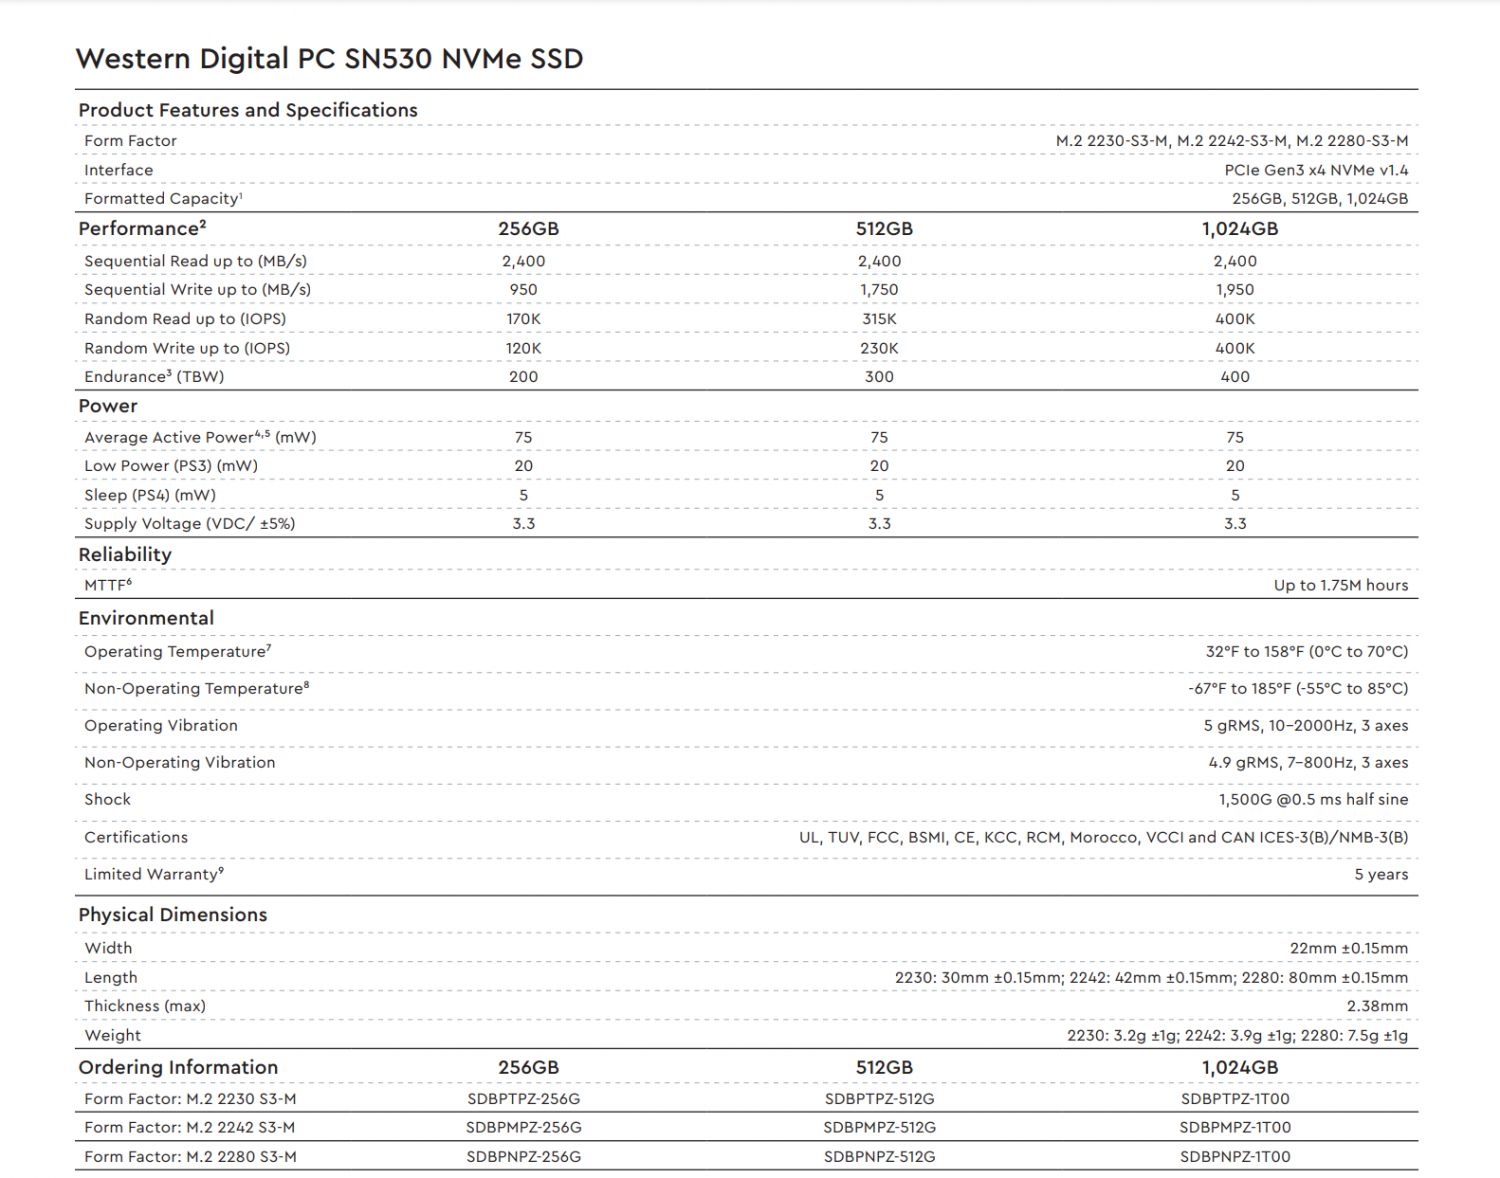 Xbox Series X SSD is not PCIe 4.0, uses PCIe 3.0 x4 WD SN530 SSD 25 | TweakTown.com